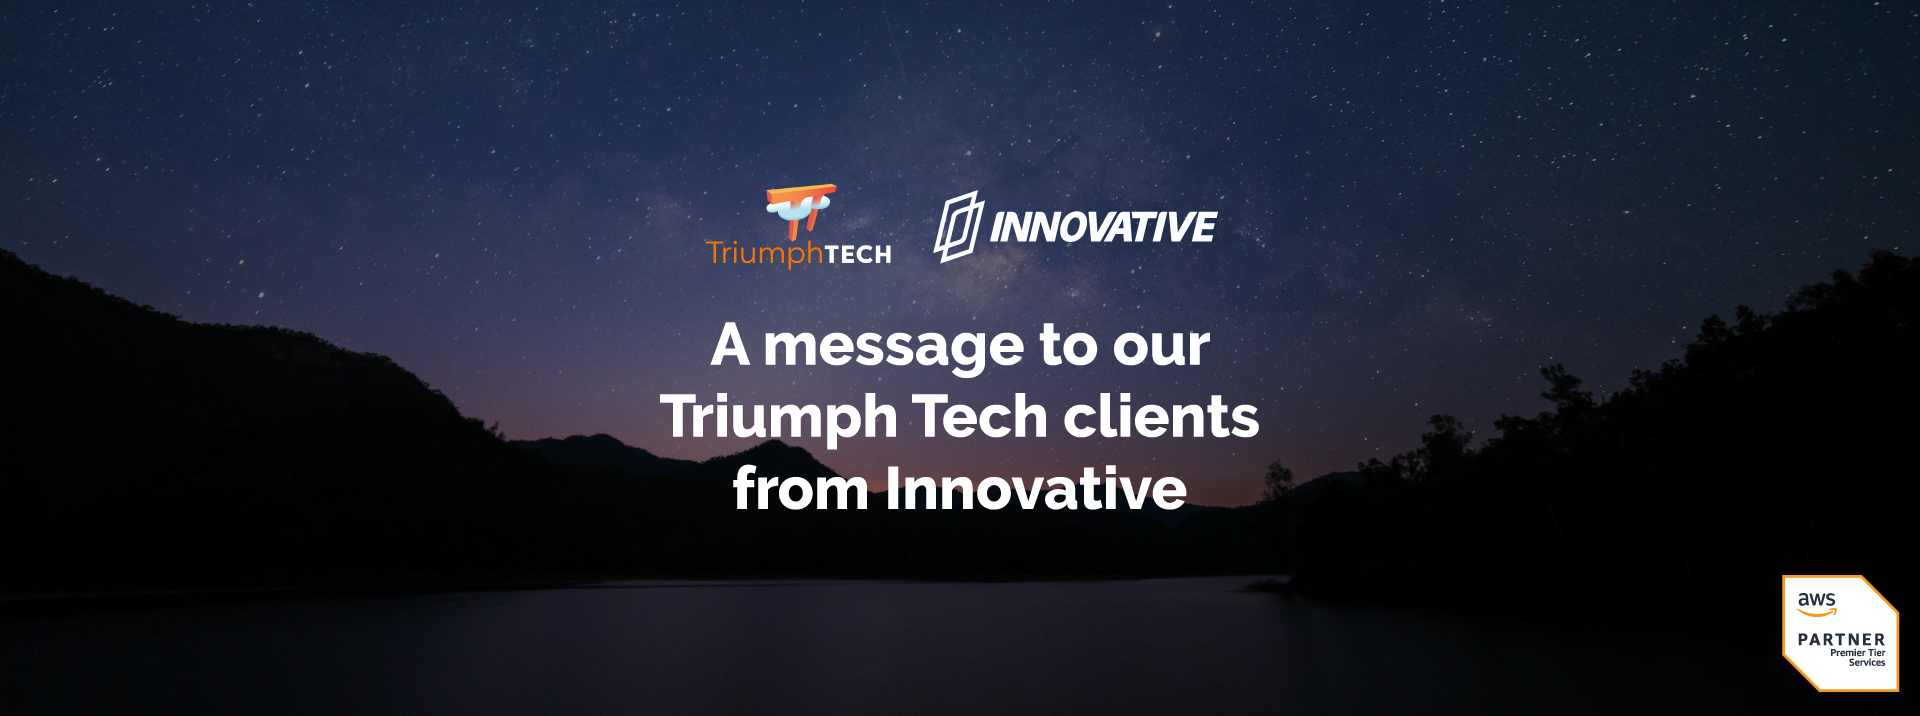 A message to our Triumph Tech clients